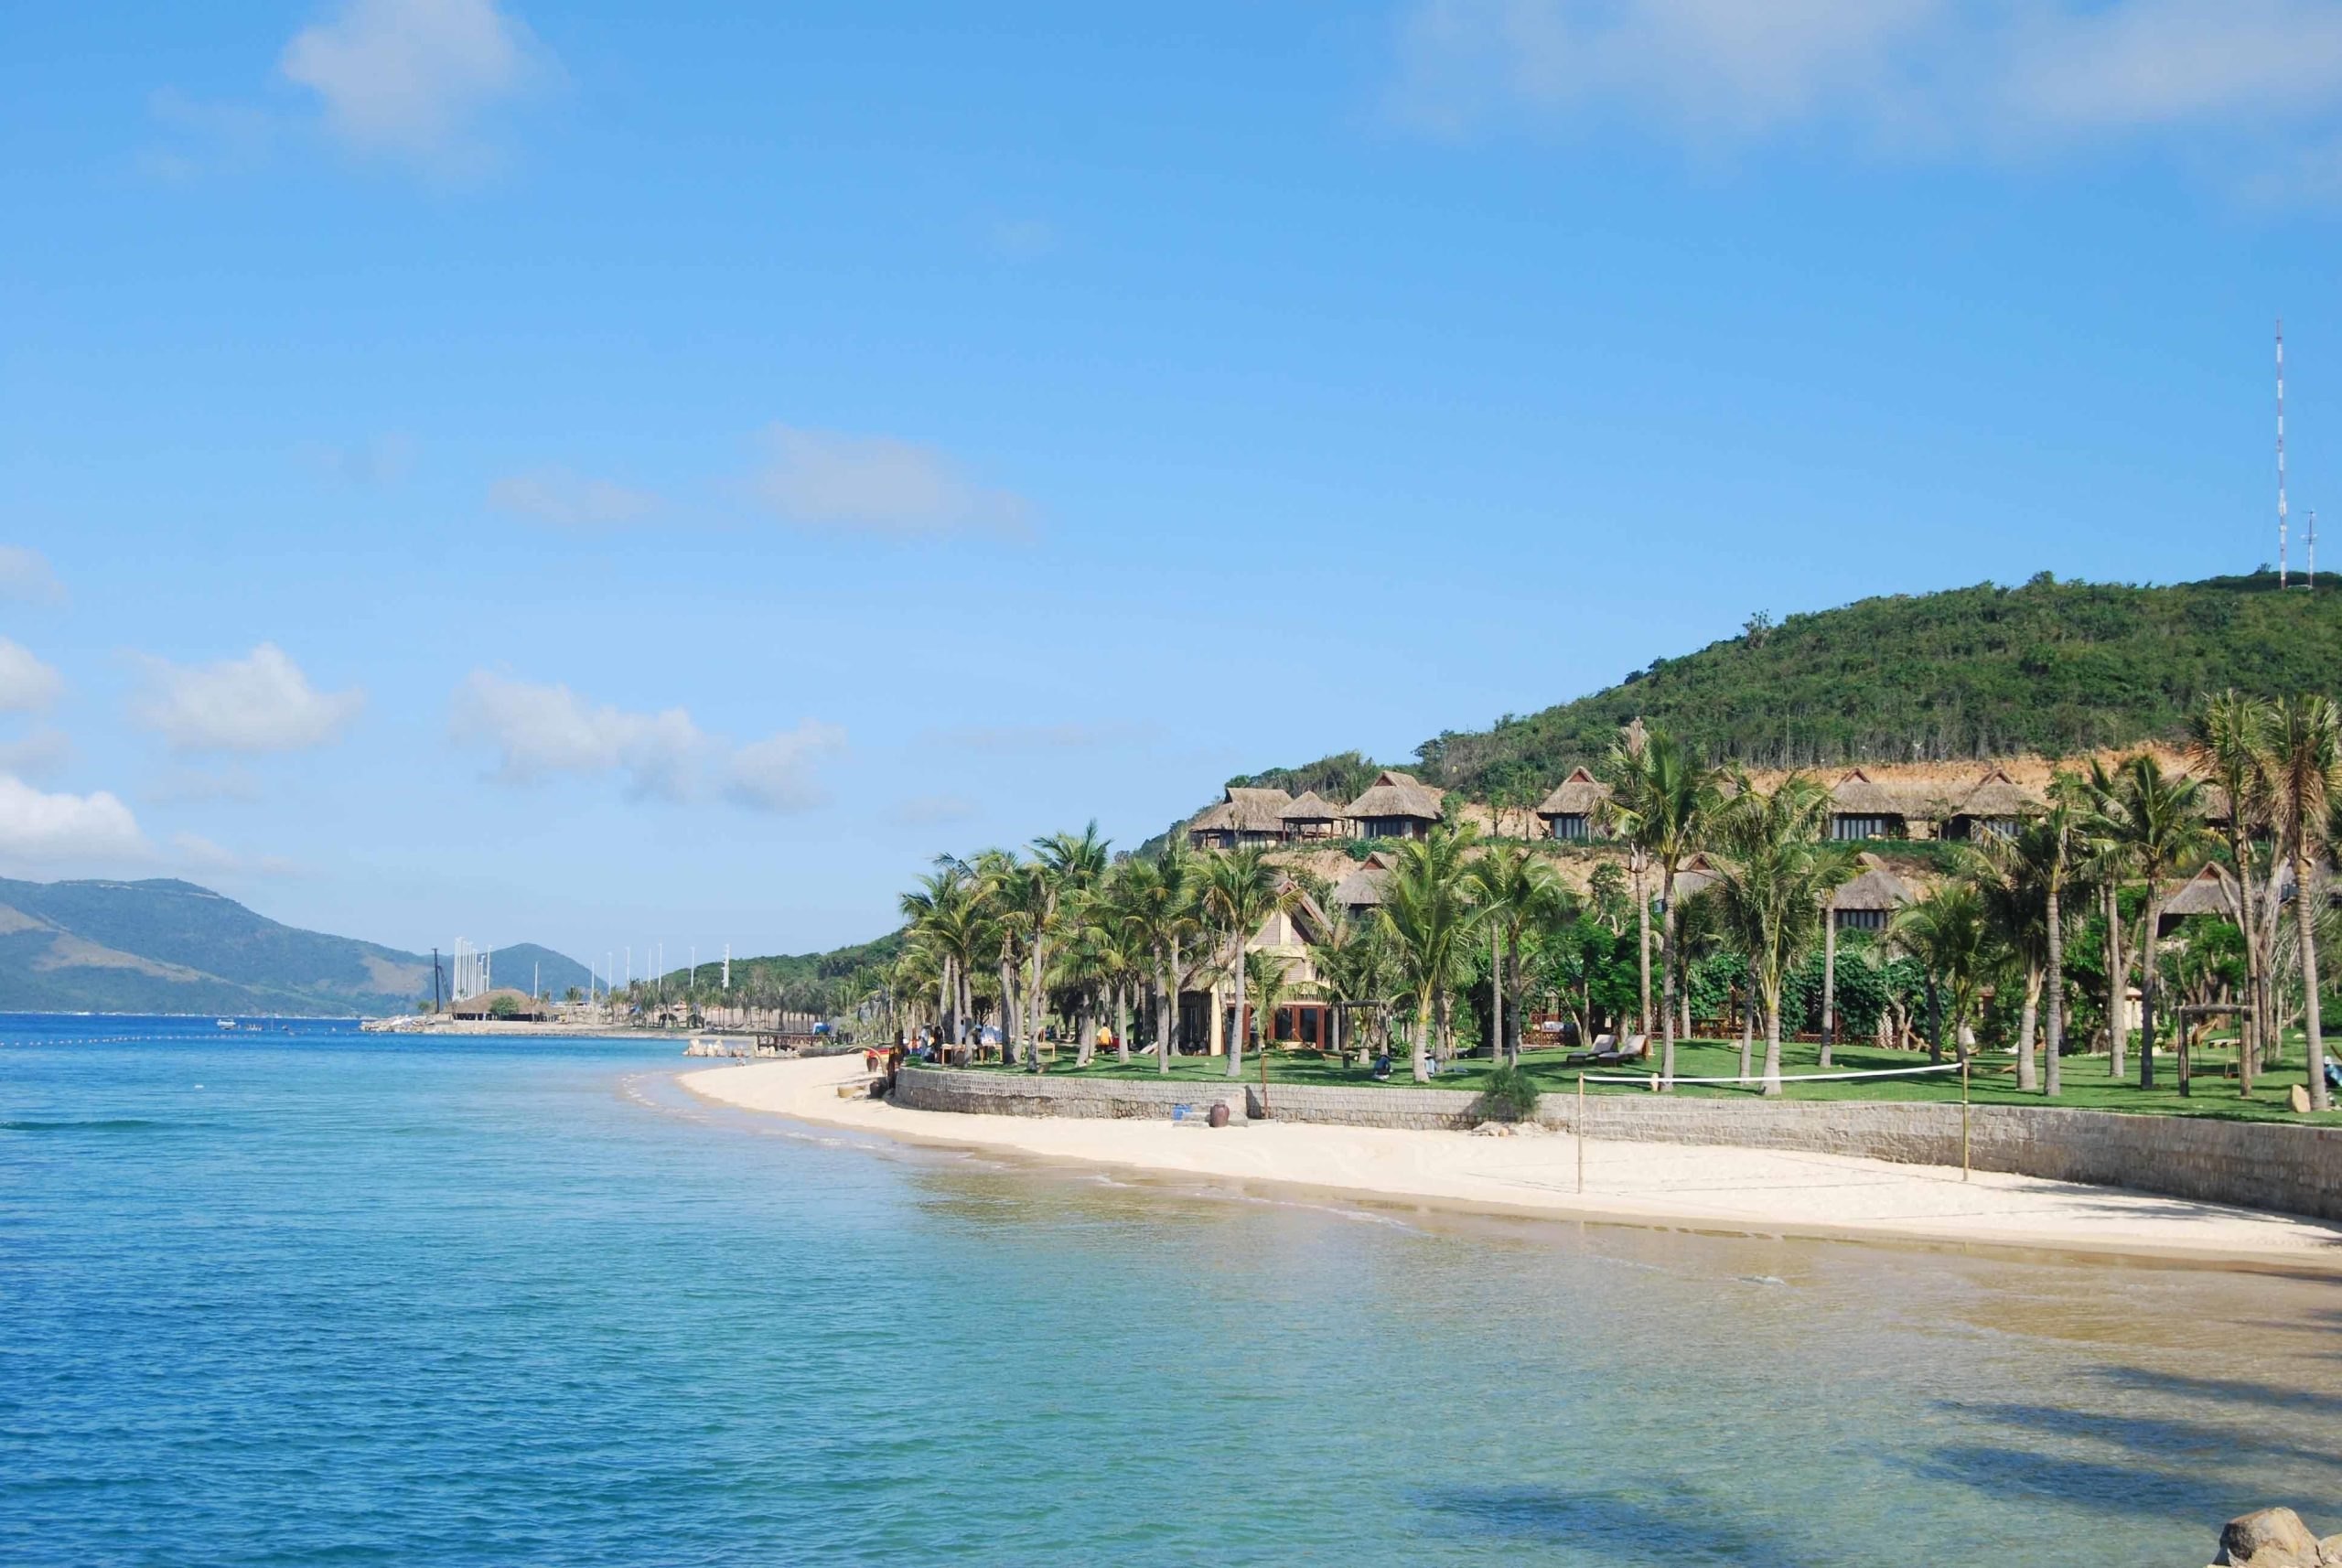 Đảo Hòn Tằm là một trong những hòn đảo đẹp nằm ở tỉnh Khánh Hoà, nổi tiếng với bãi biển trắng mịn và nước biển trong xanh. Đây là điểm đến lý tưởng cho những ai muốn thư giãn và tận hưởng không gian tự nhiên tuyệt đẹp của biển cả.